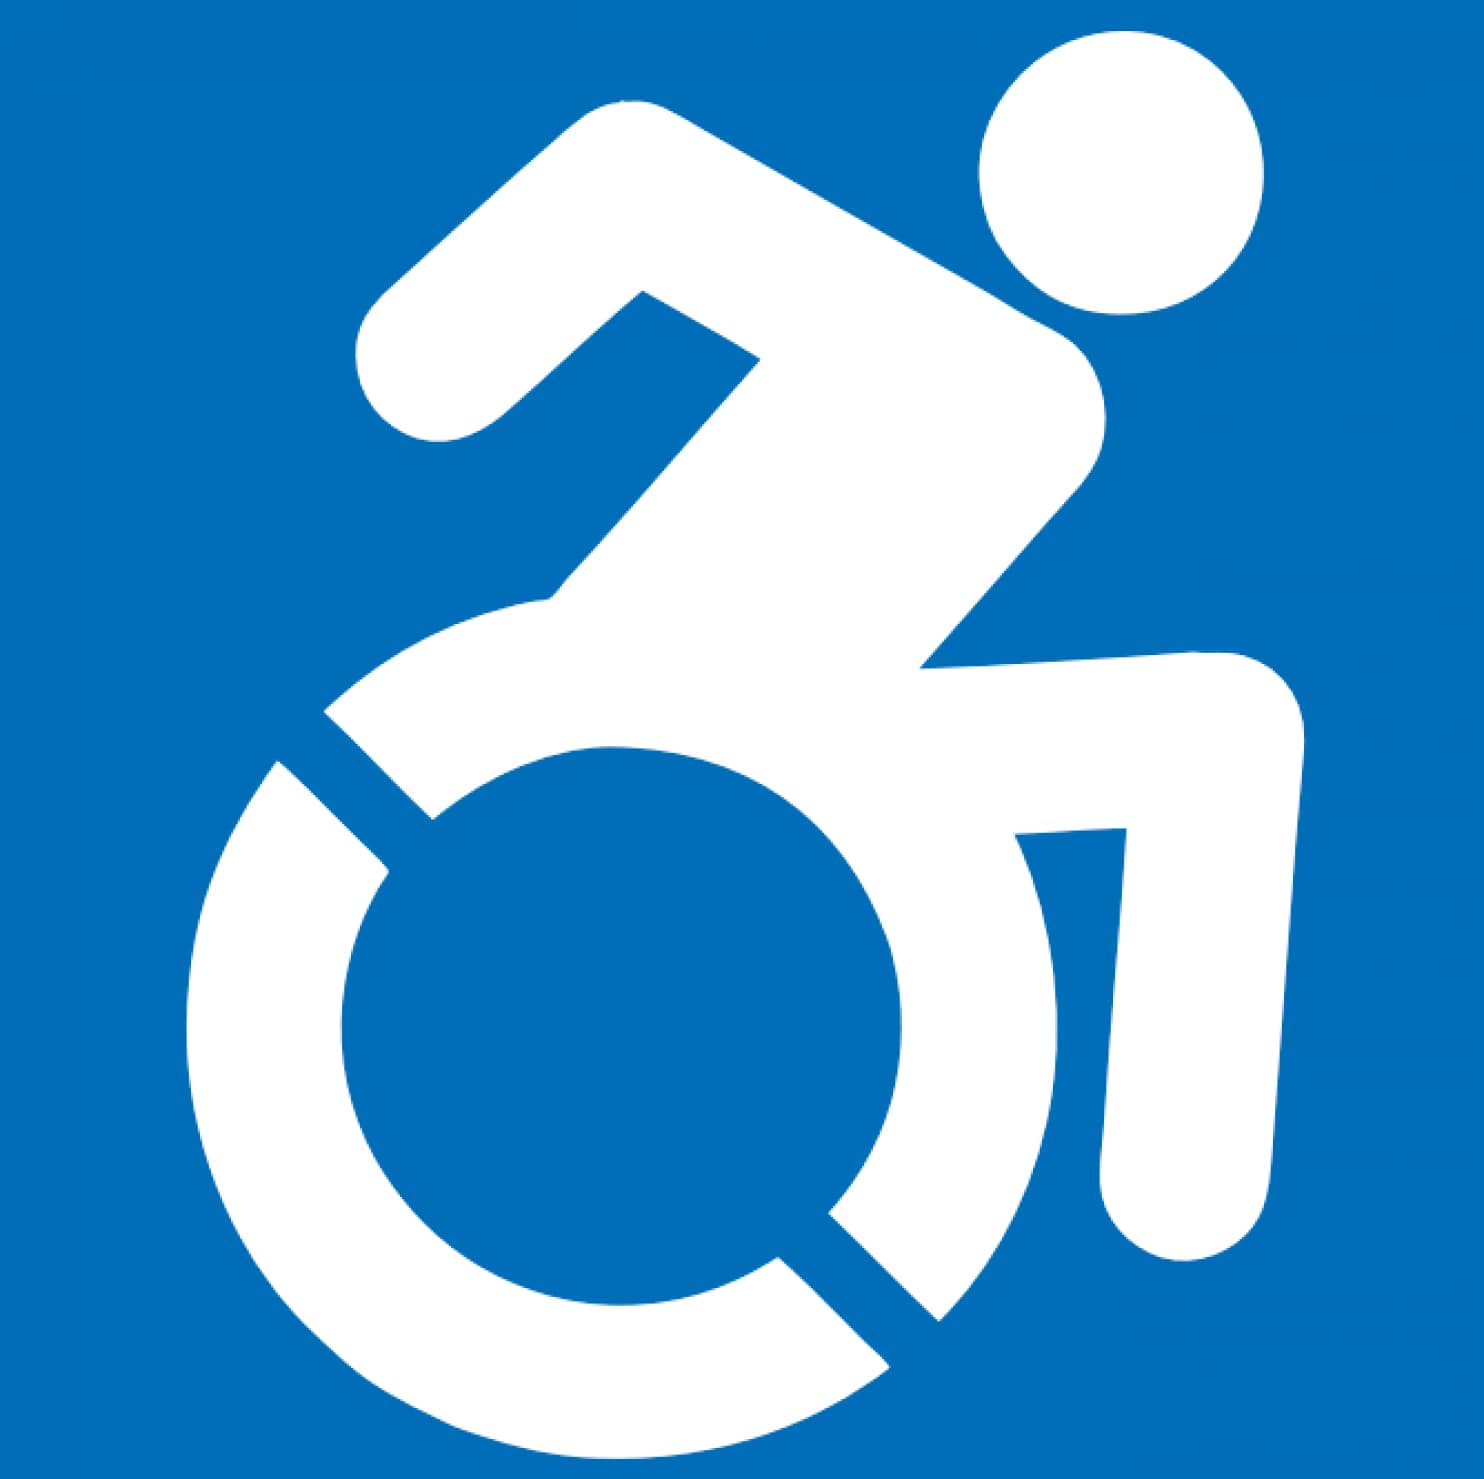 Hanicap Logo - The handicap symbol gets an update